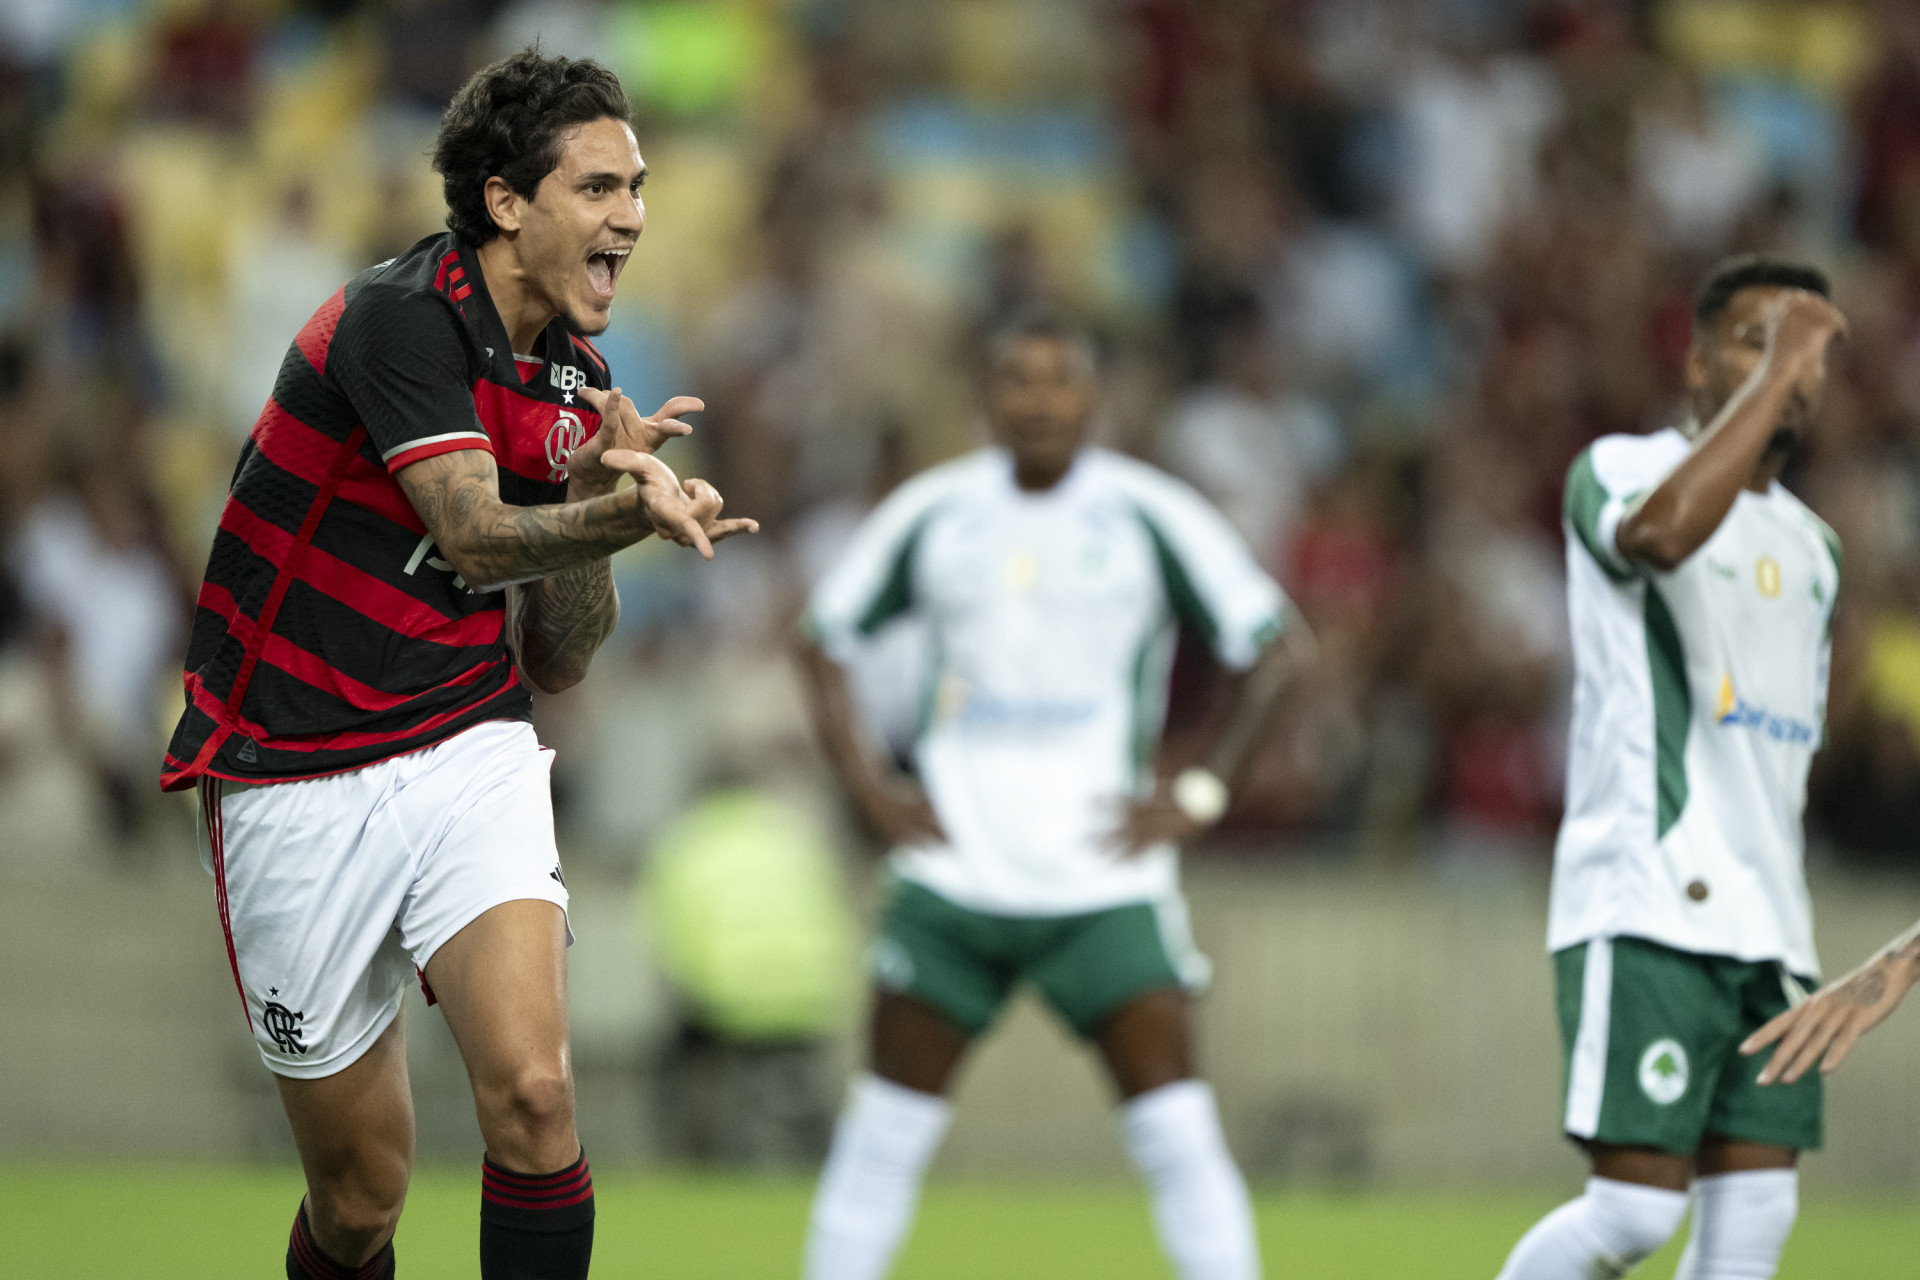 Pedro comemora gol marcado no jogo do Flamengo contra o Boavista  - JORGE RODRIGUES/AGIF - AGÊNCIA DE FOTOGRAFIA/ESTADÃO CONTEÚDO